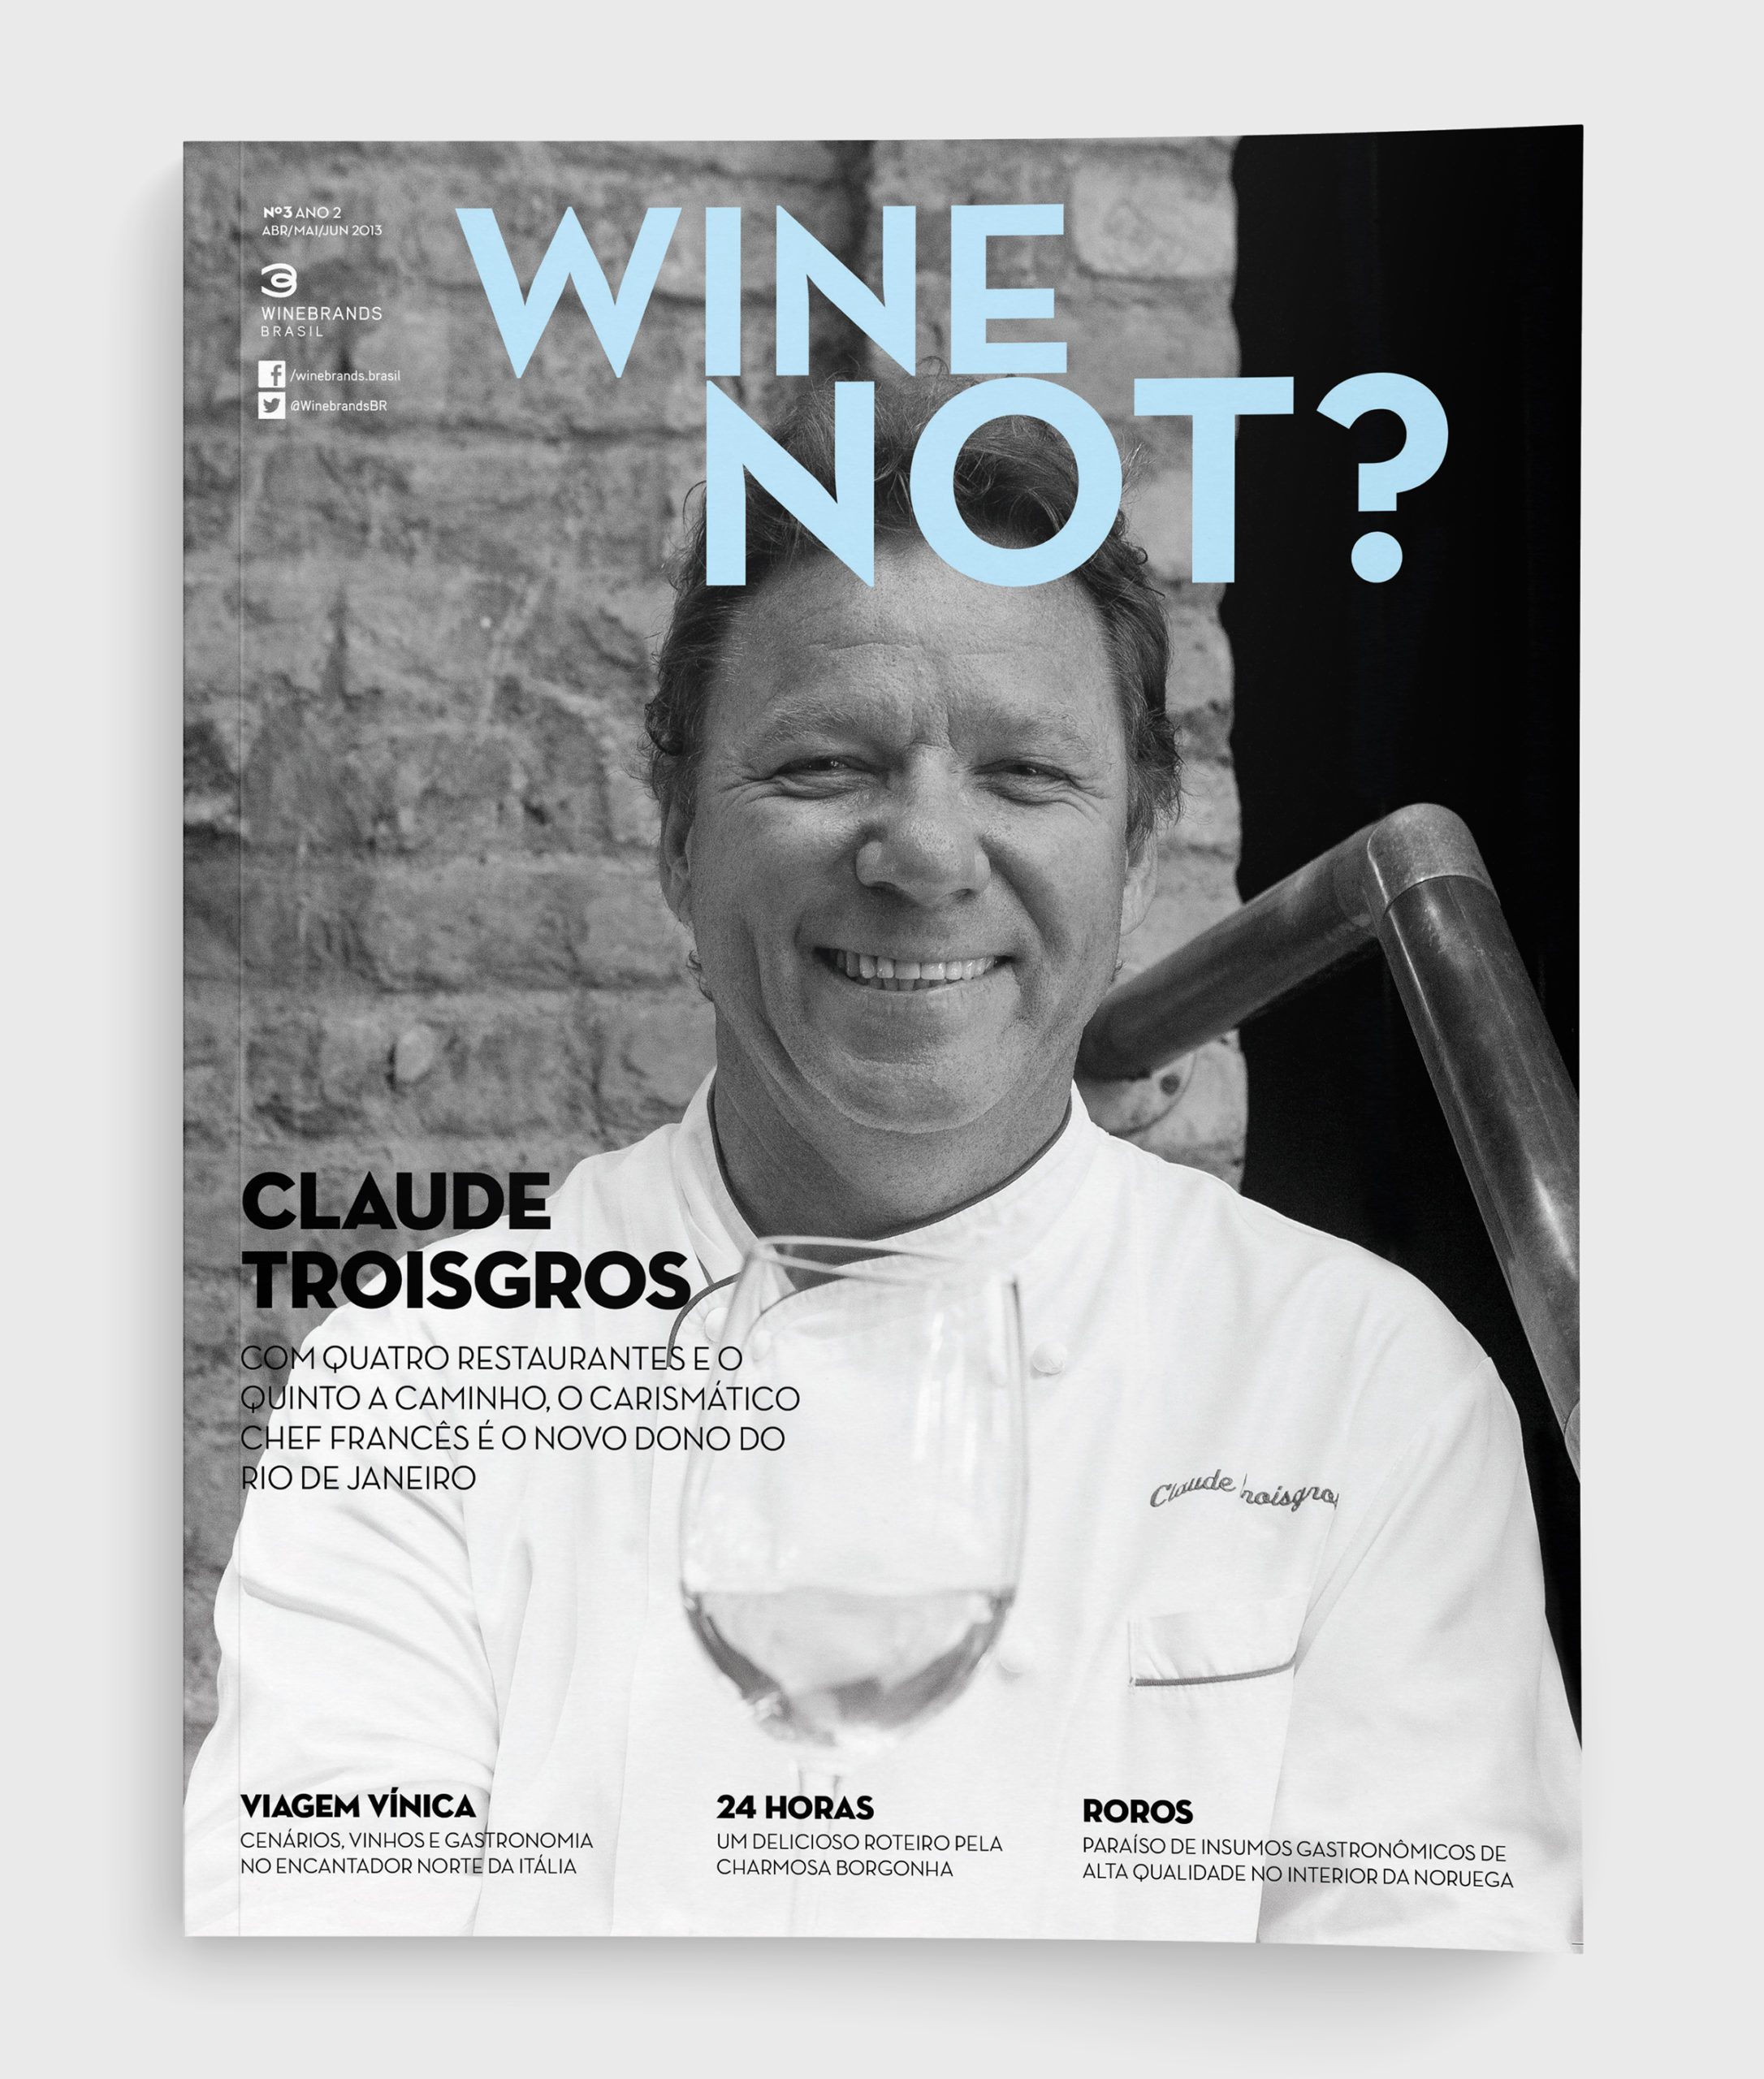 Capa da revista "Wine Not?" número 3 com Claude Troisgros, criada pela Brandium no âmbito do projeto de Identidade Visual